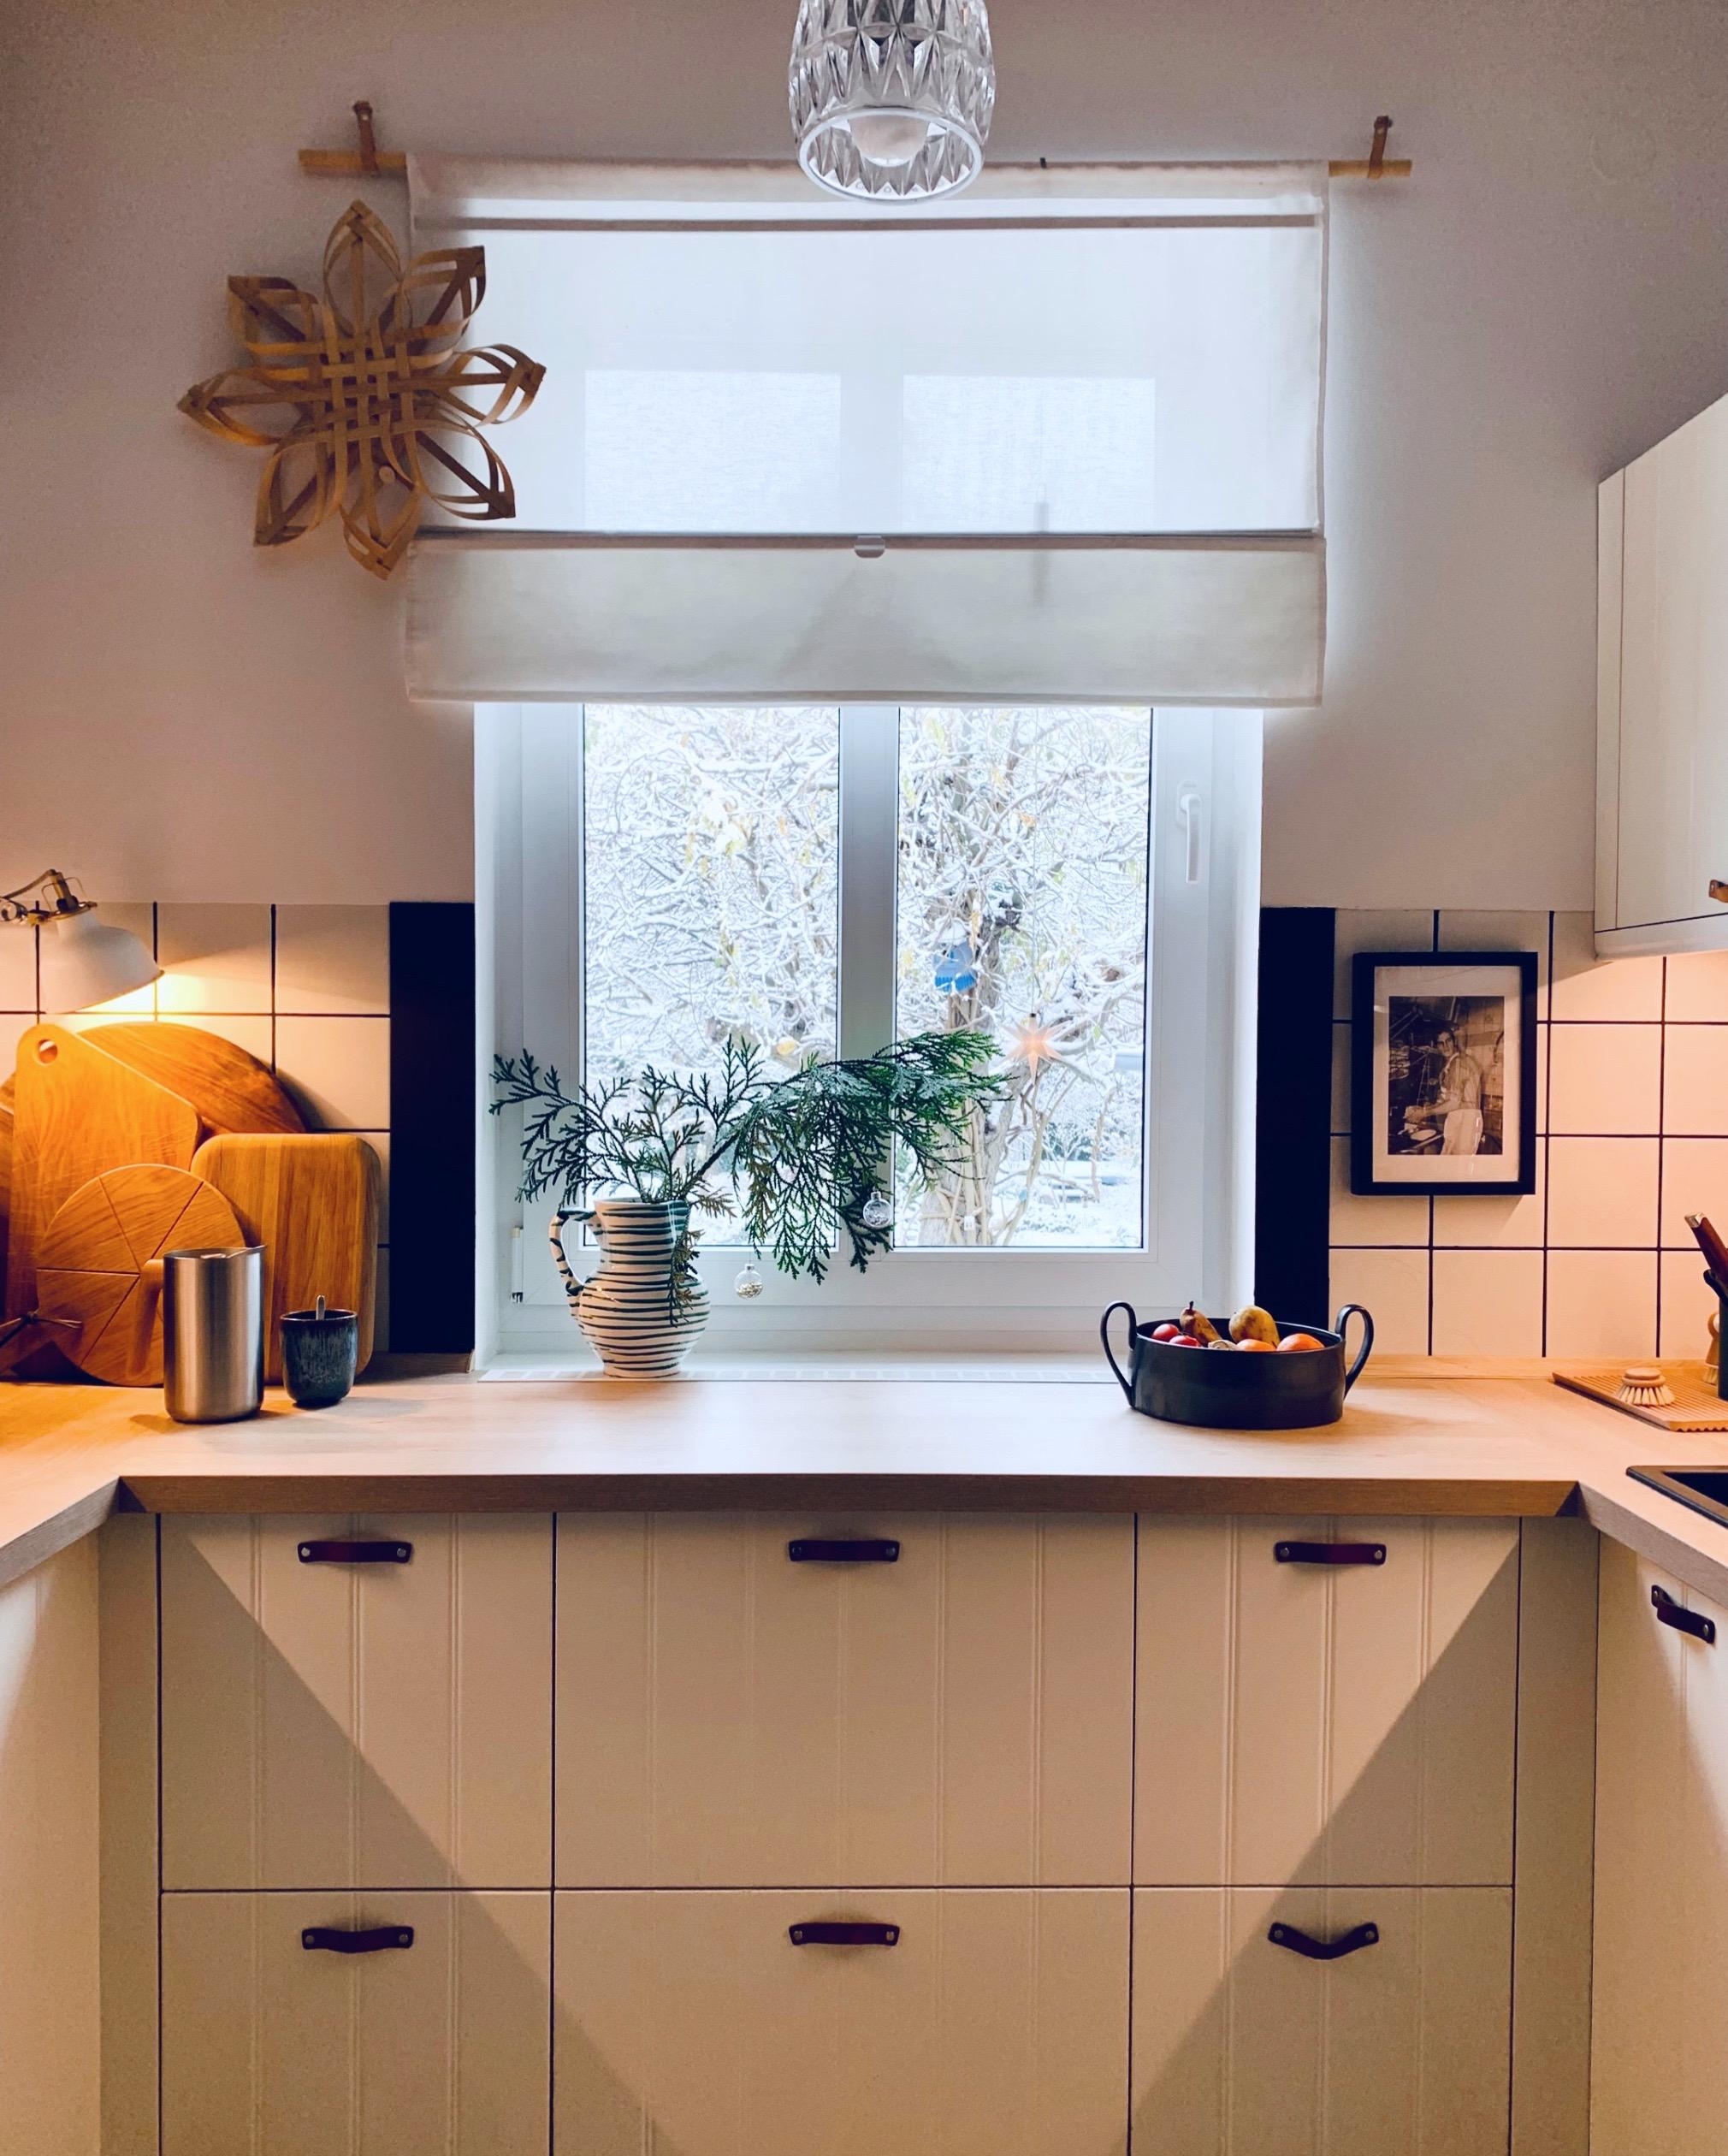 #küche #kücheninspo #blickausdemfenster #wintermood #weihnachten